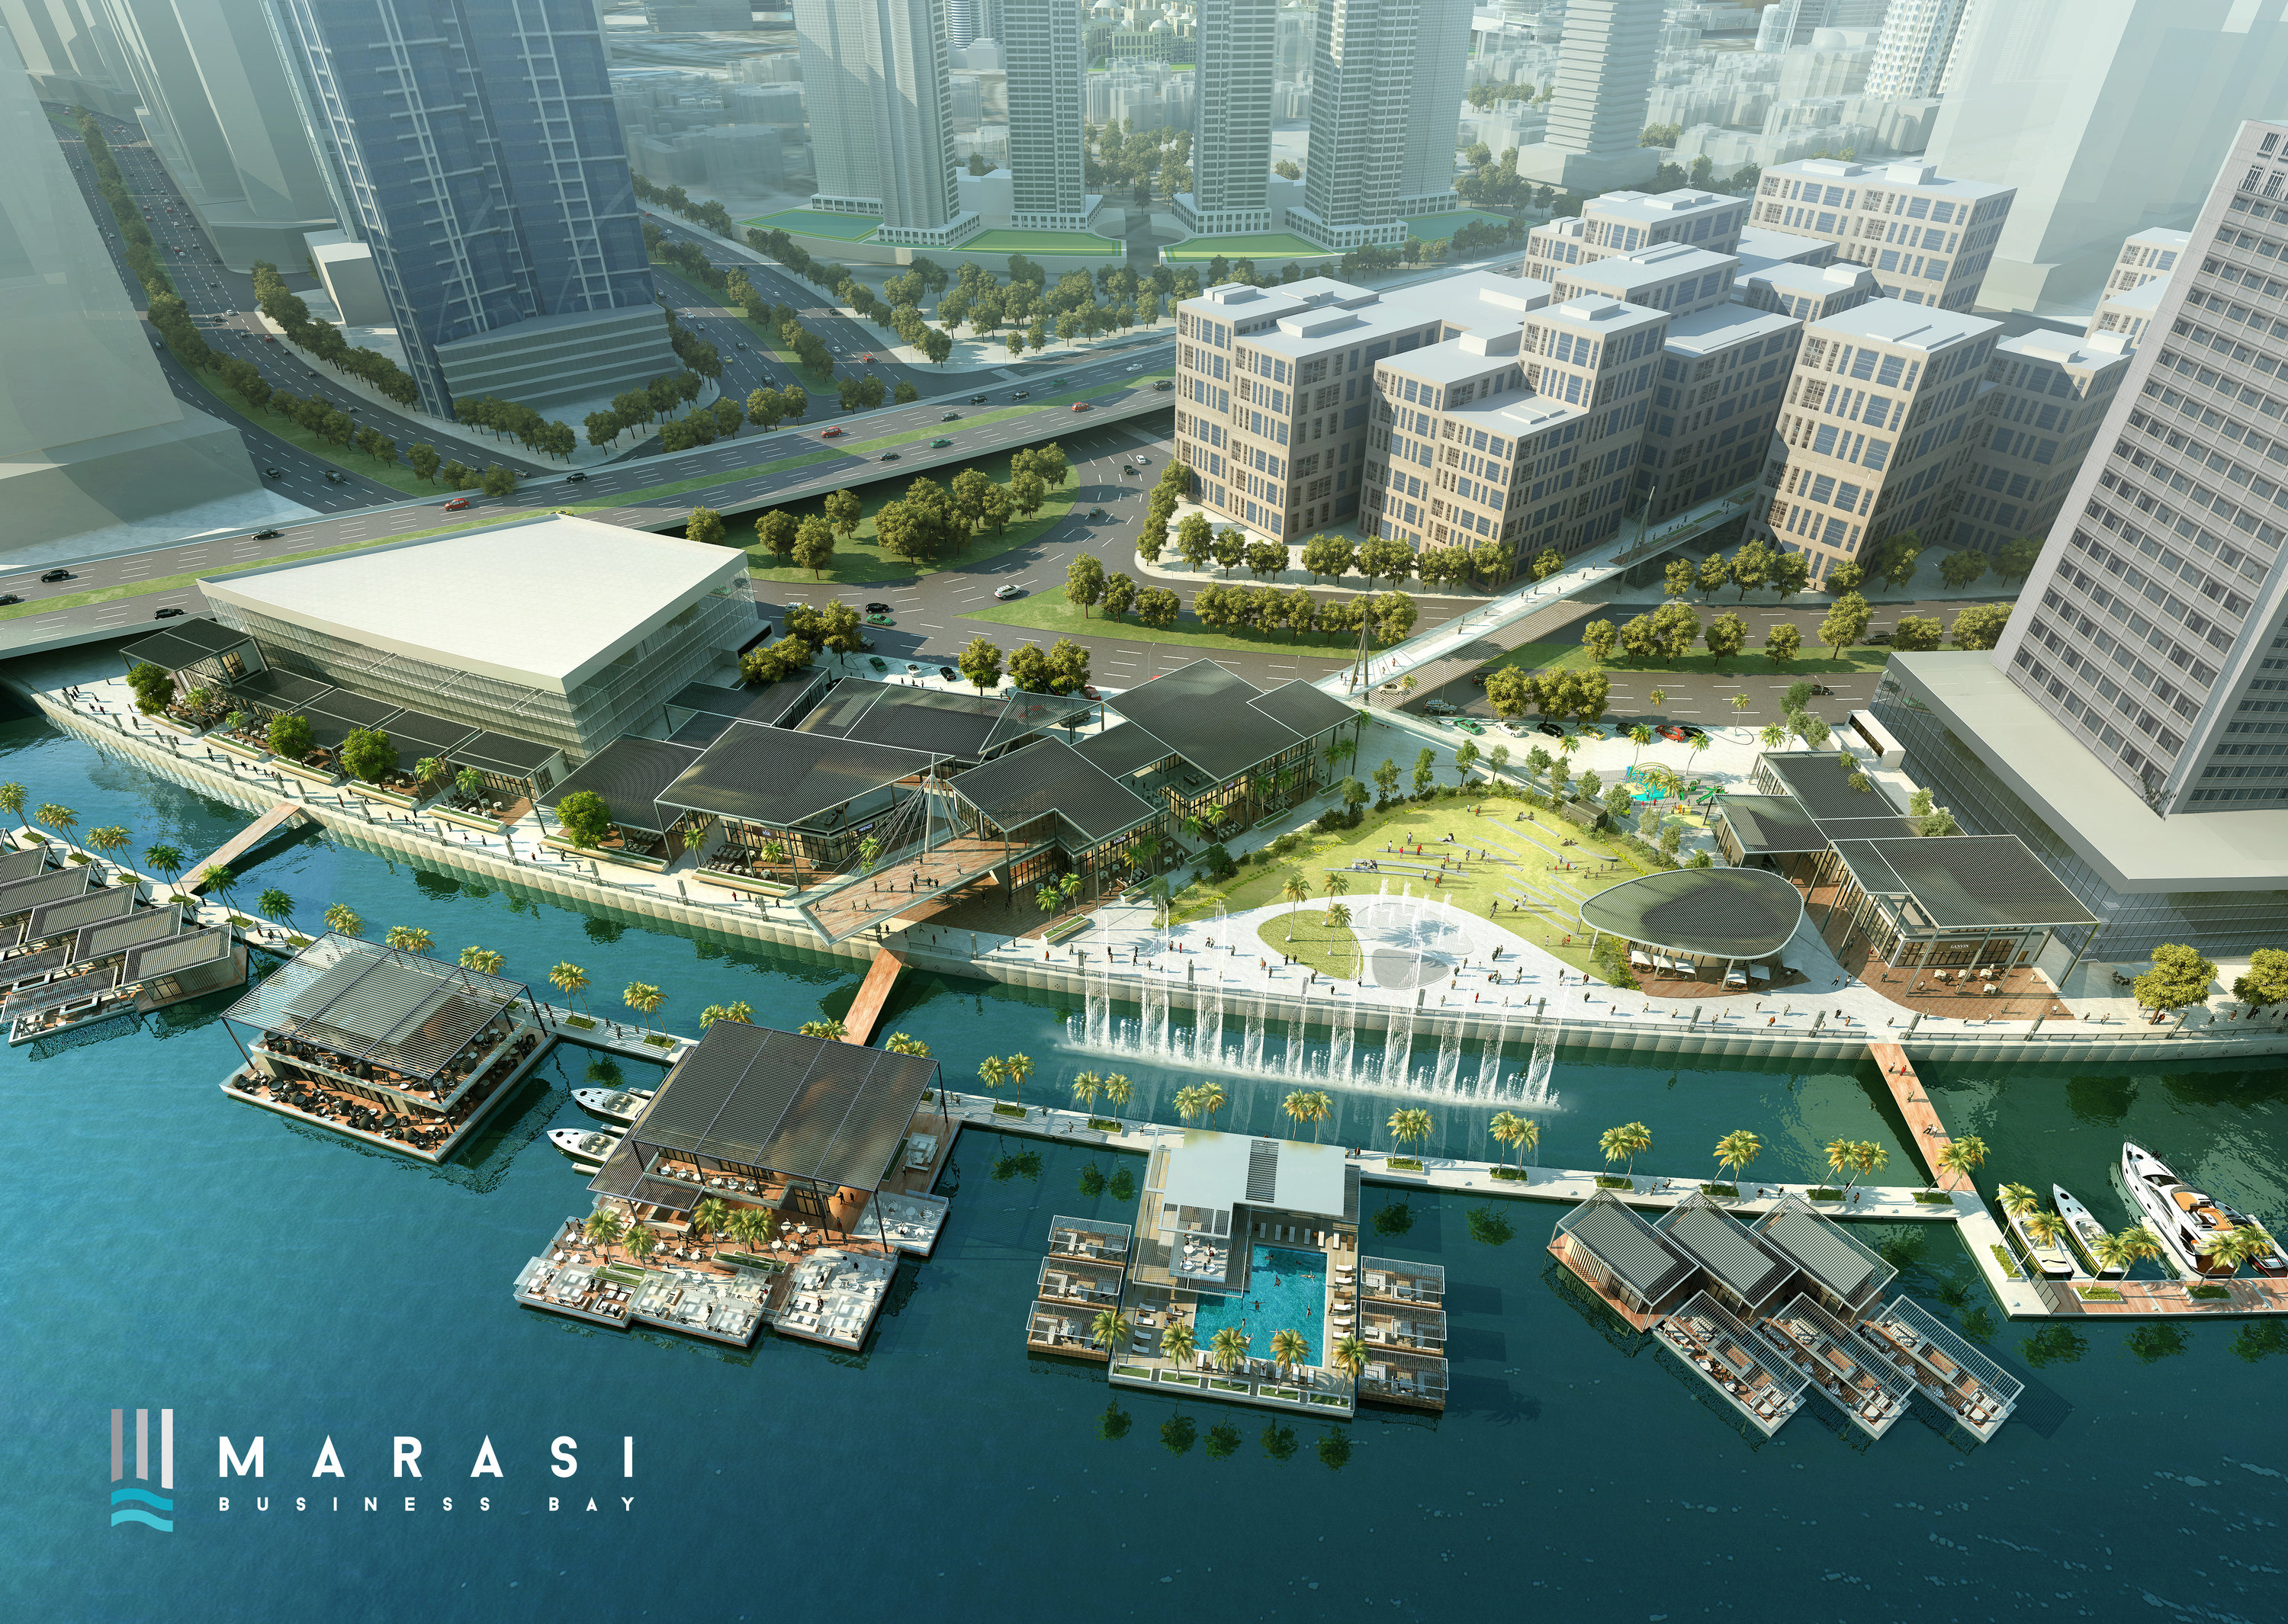 #29 Dubai Properties Group